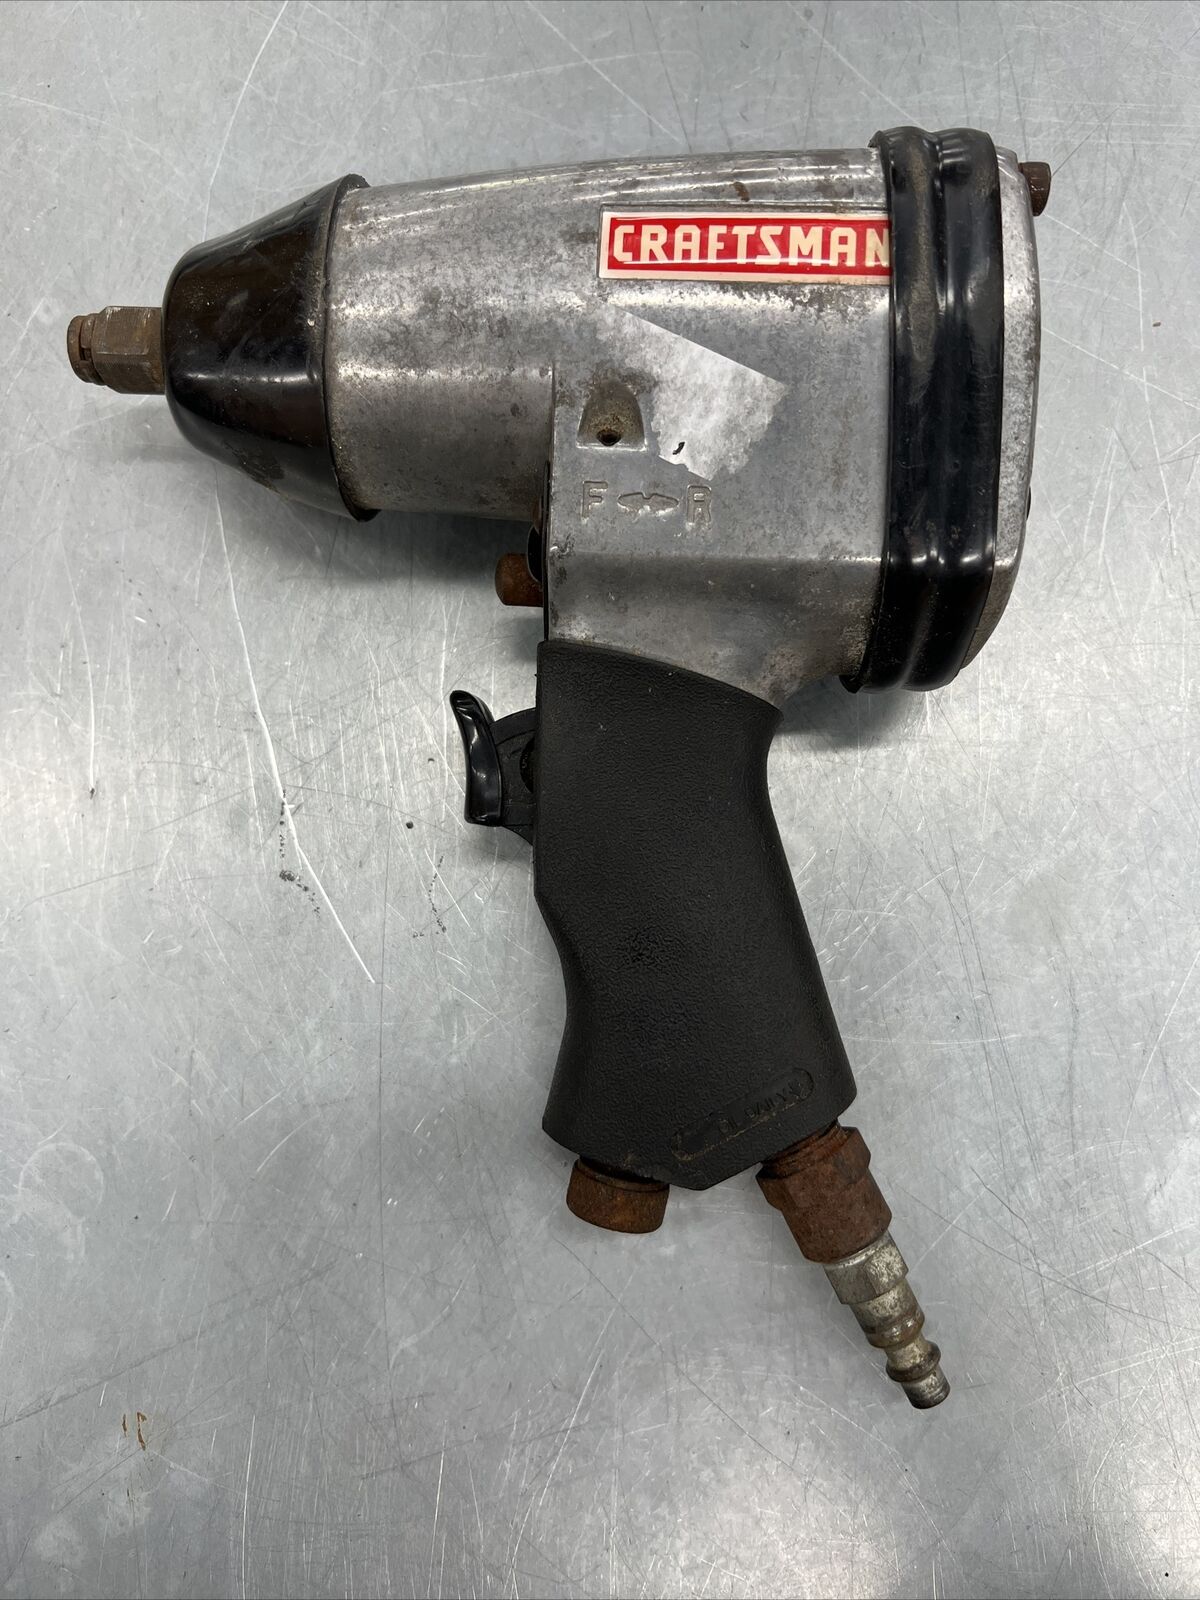 Craftsman Pneumatic Air 1/2” Drive Impact Gun Wrench 875.191182